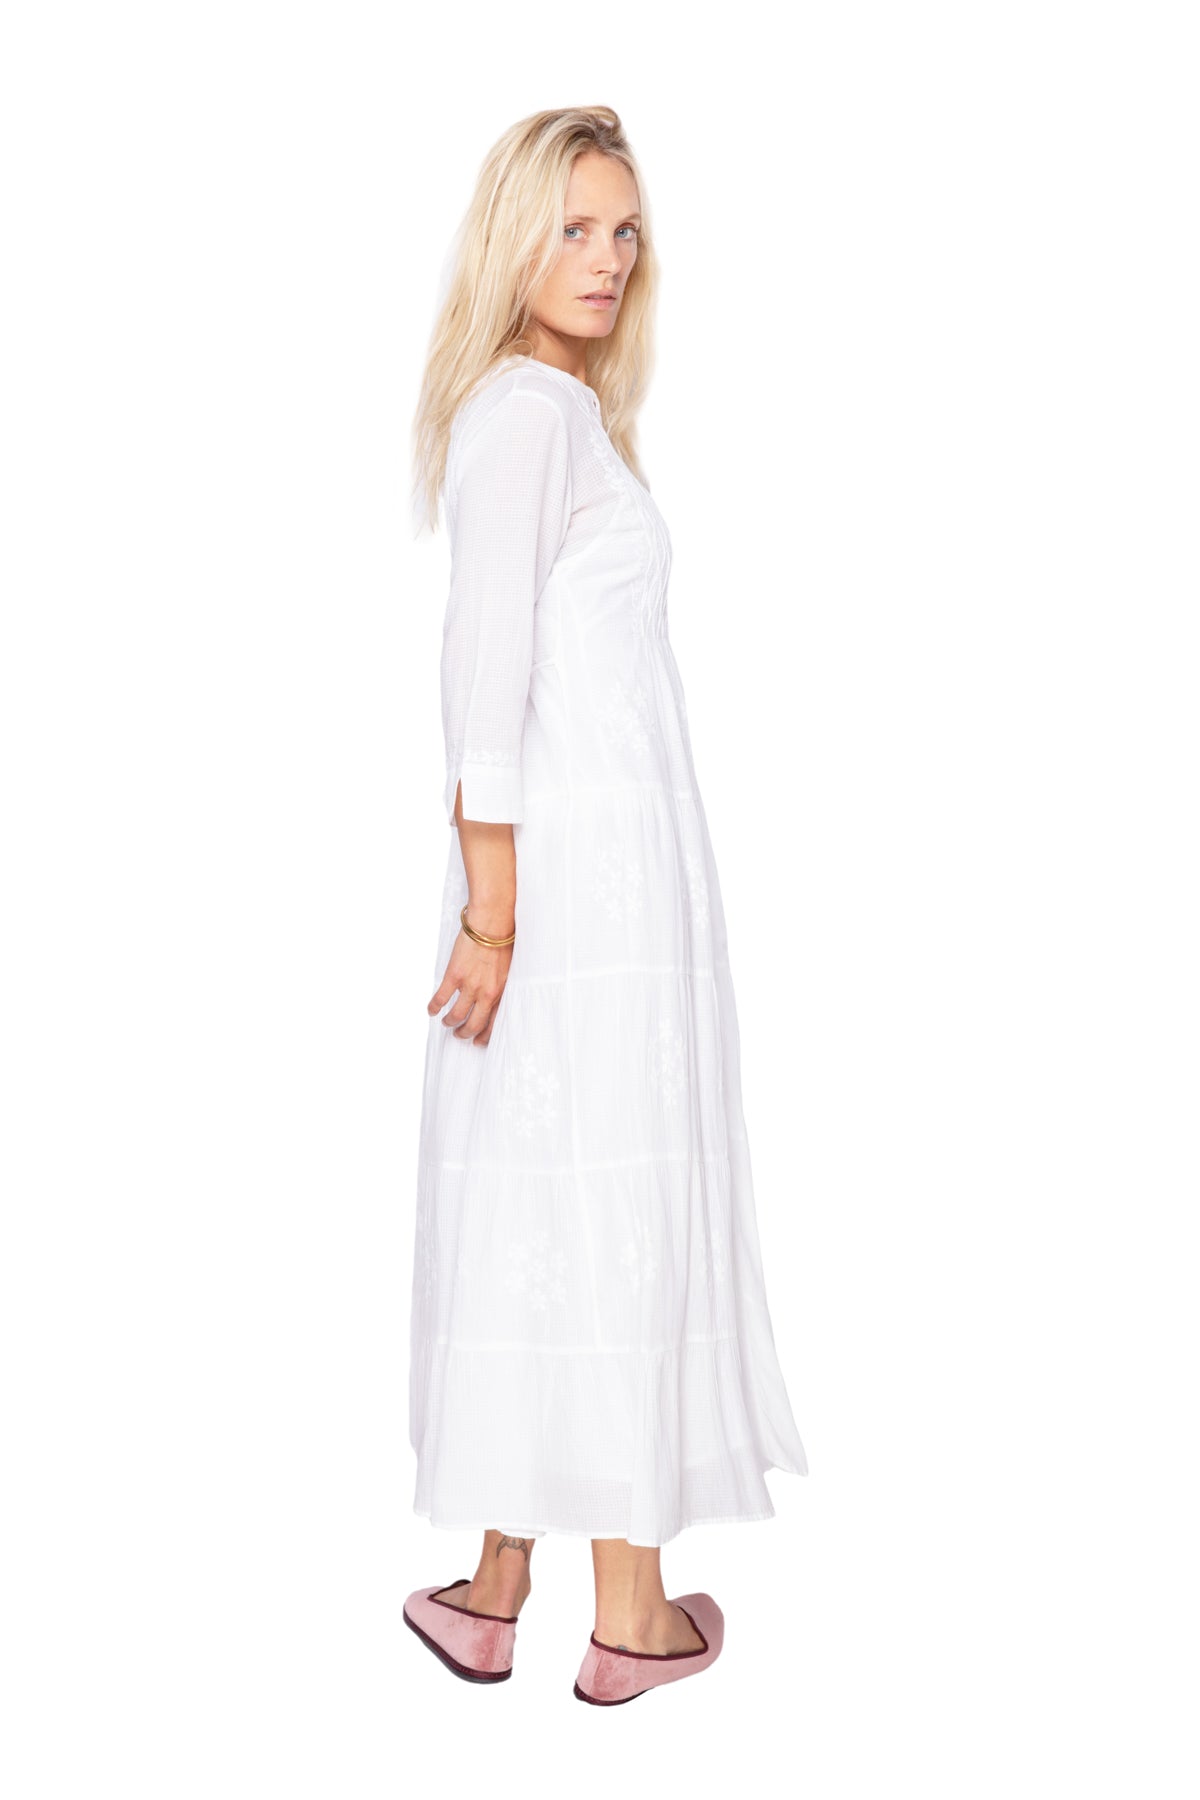 White Cotton Dress - Jakota